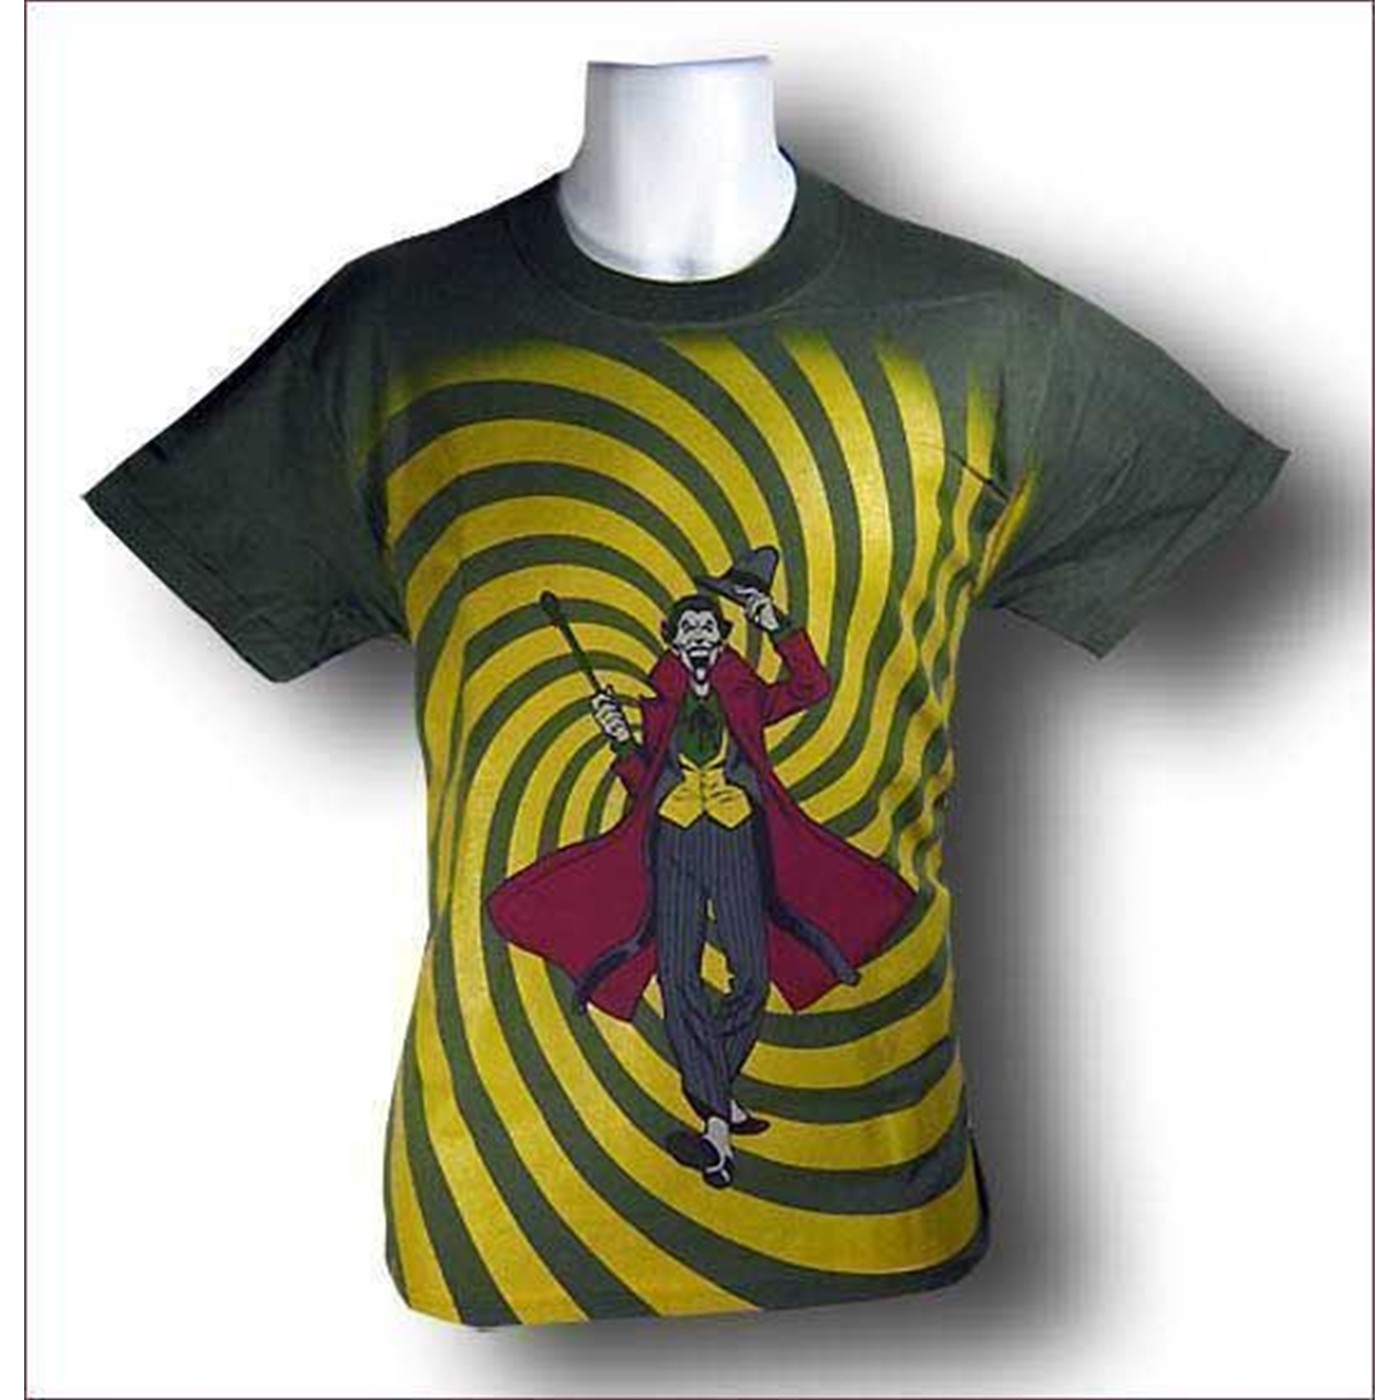 Joker T-Shirt Wicked Spiral